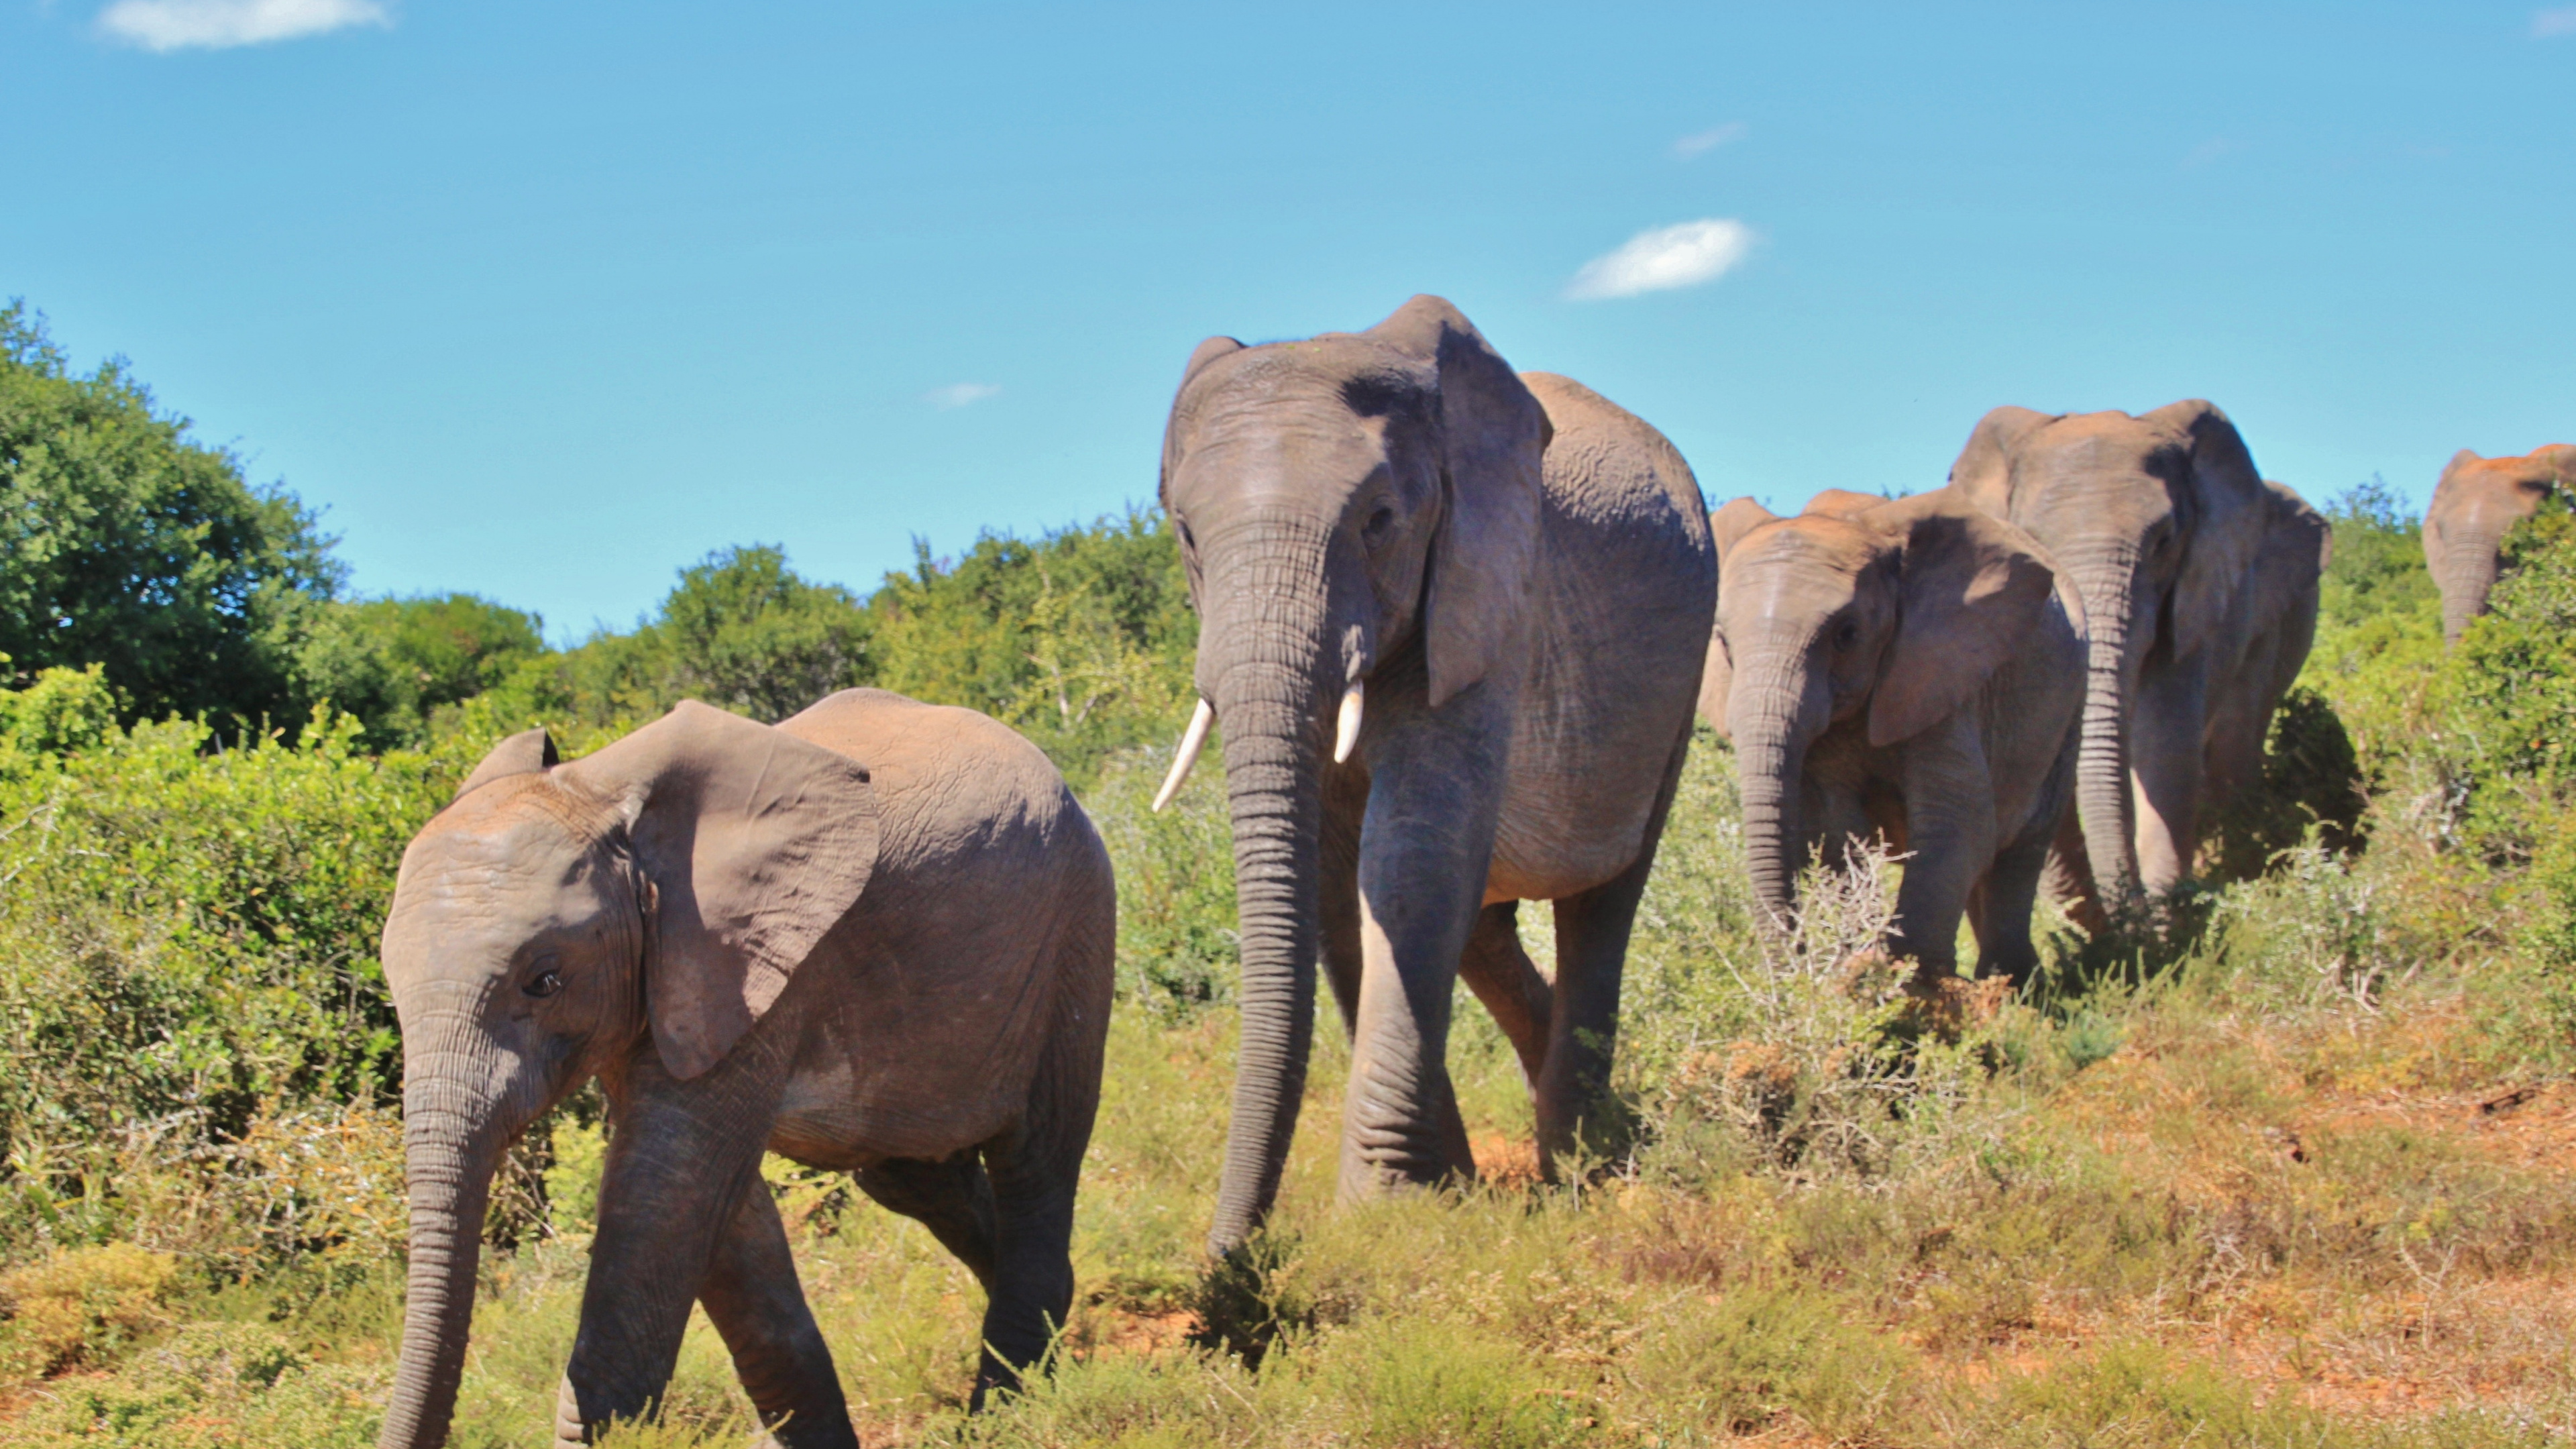 非洲丛林中的大象, 大象和猛犸象, 陆地动物, 野生动物, 非洲象 壁纸 3840x2160 允许